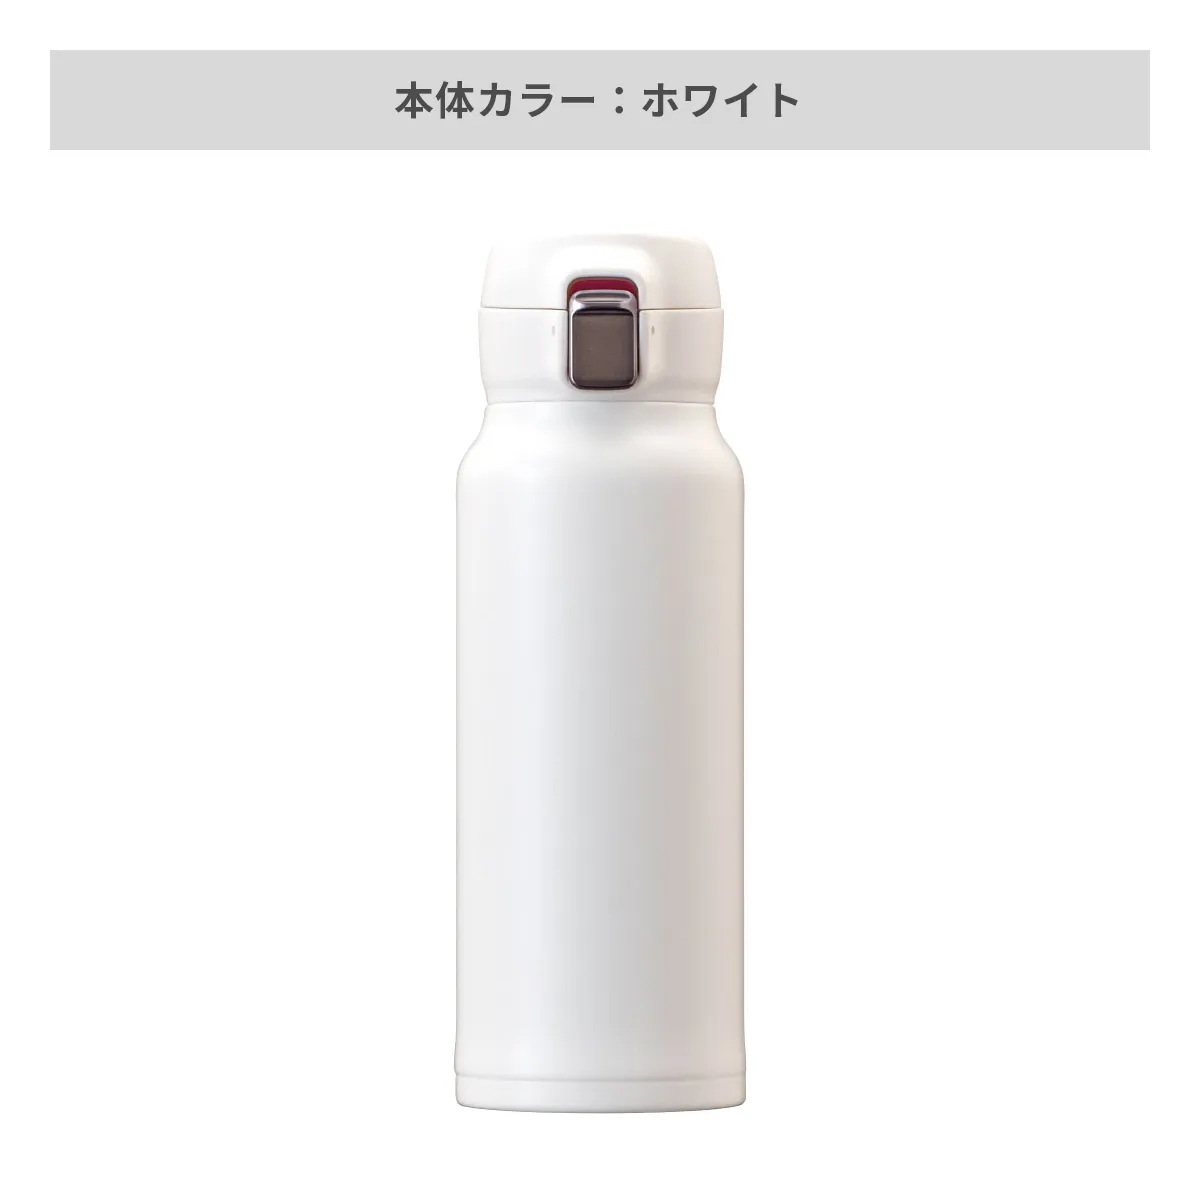 エアリスト 分解できる超軽量ワンタッチボトル 620ml【オリジナルステンレスボトル / 回転シルク印刷】 画像4